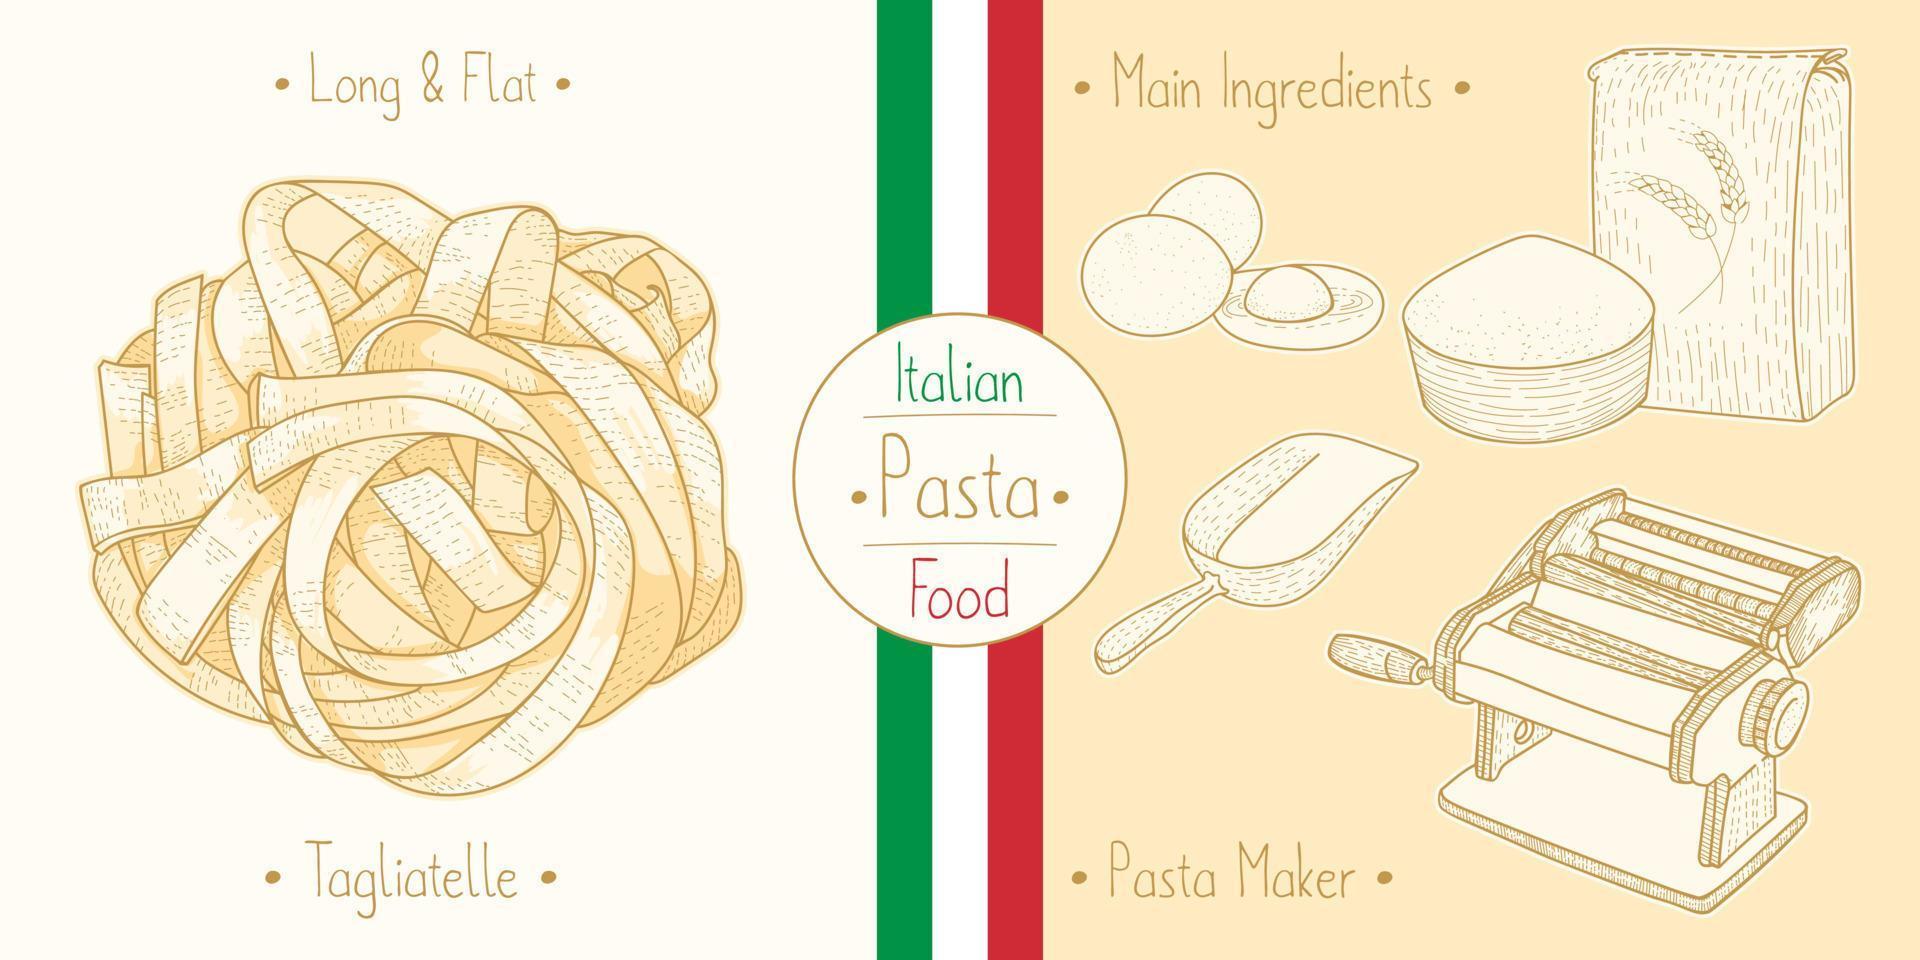 cozinhar macarrão tagliatelle de comida italiana e principais ingredientes e equipamentos de fabricantes de massas, esboçar ilustração em estilo vintage vetor